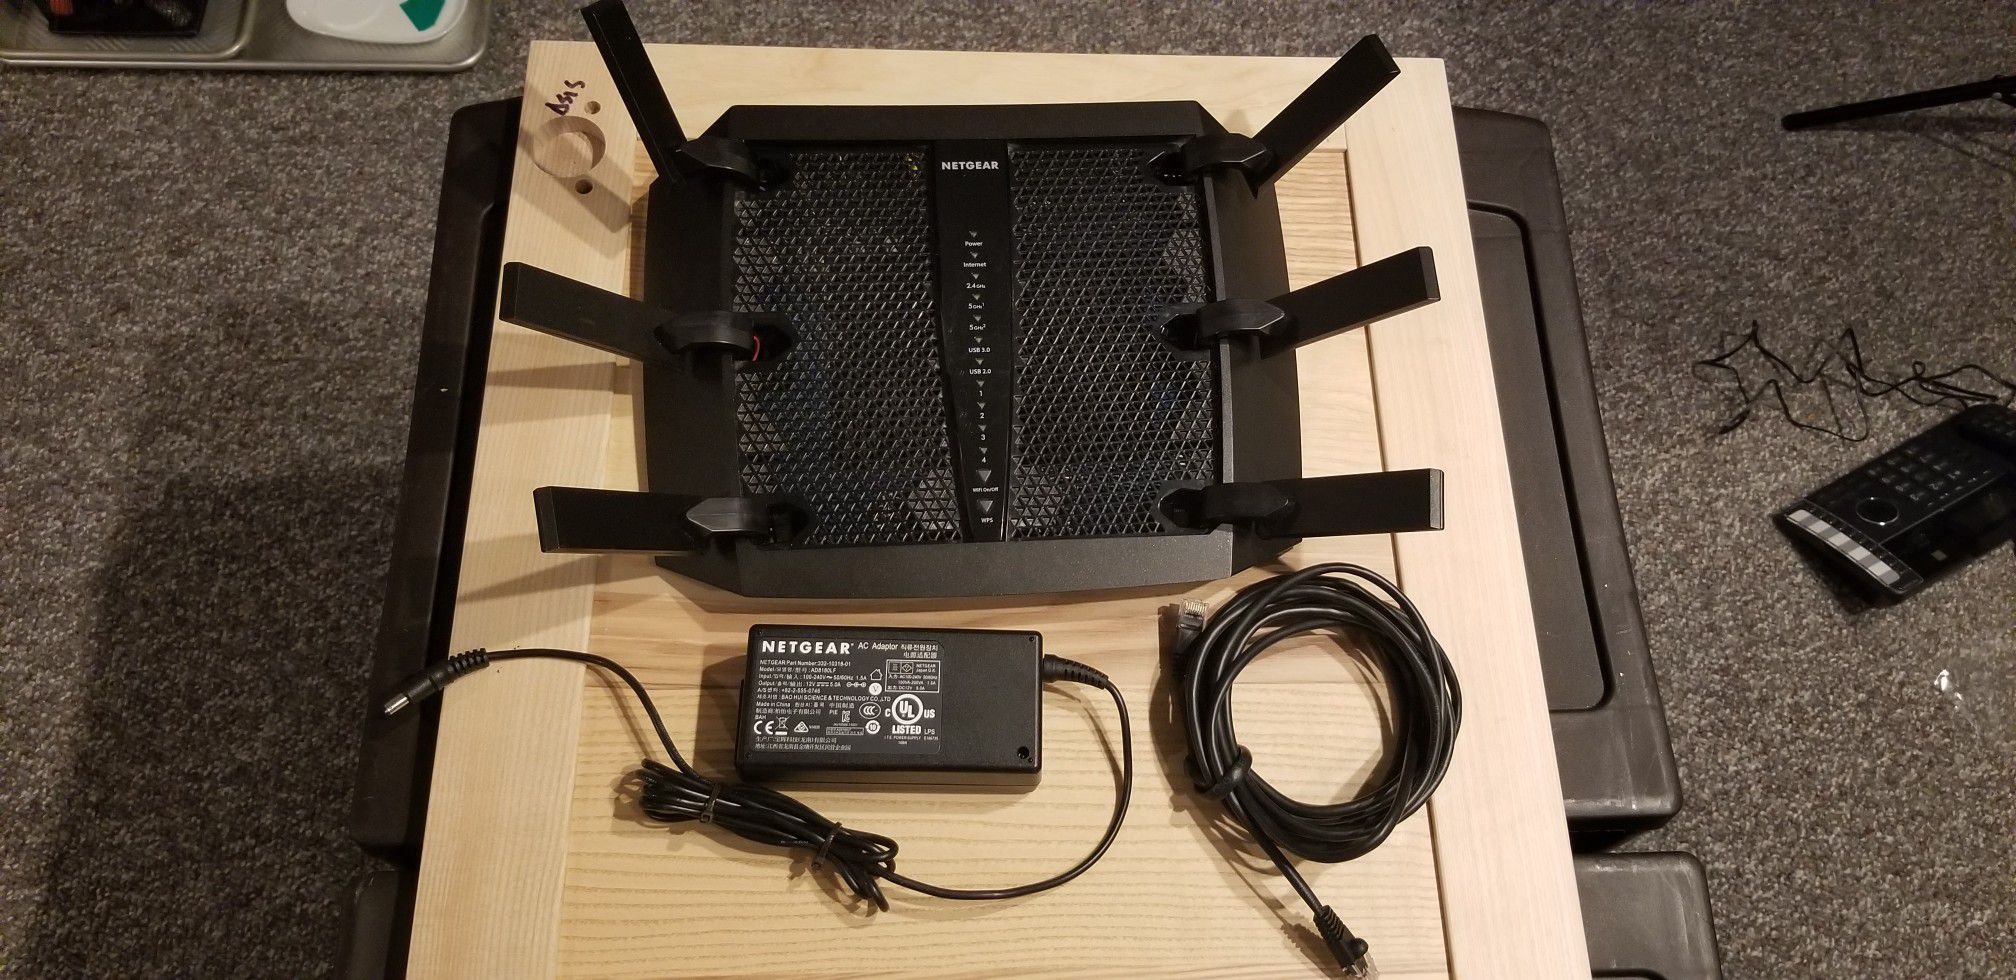 Tri-band Wifi Router Netgear Nighthawk x6 R8000